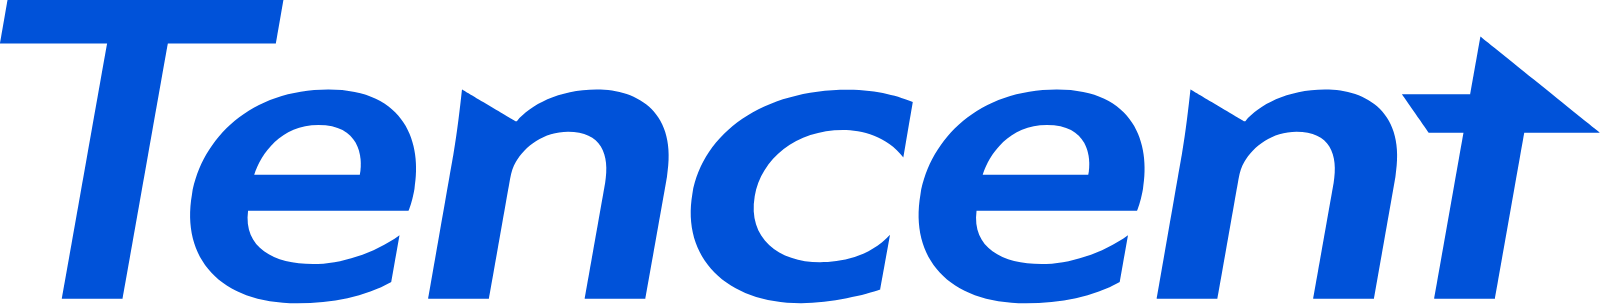 Tencent logo large (transparent PNG)